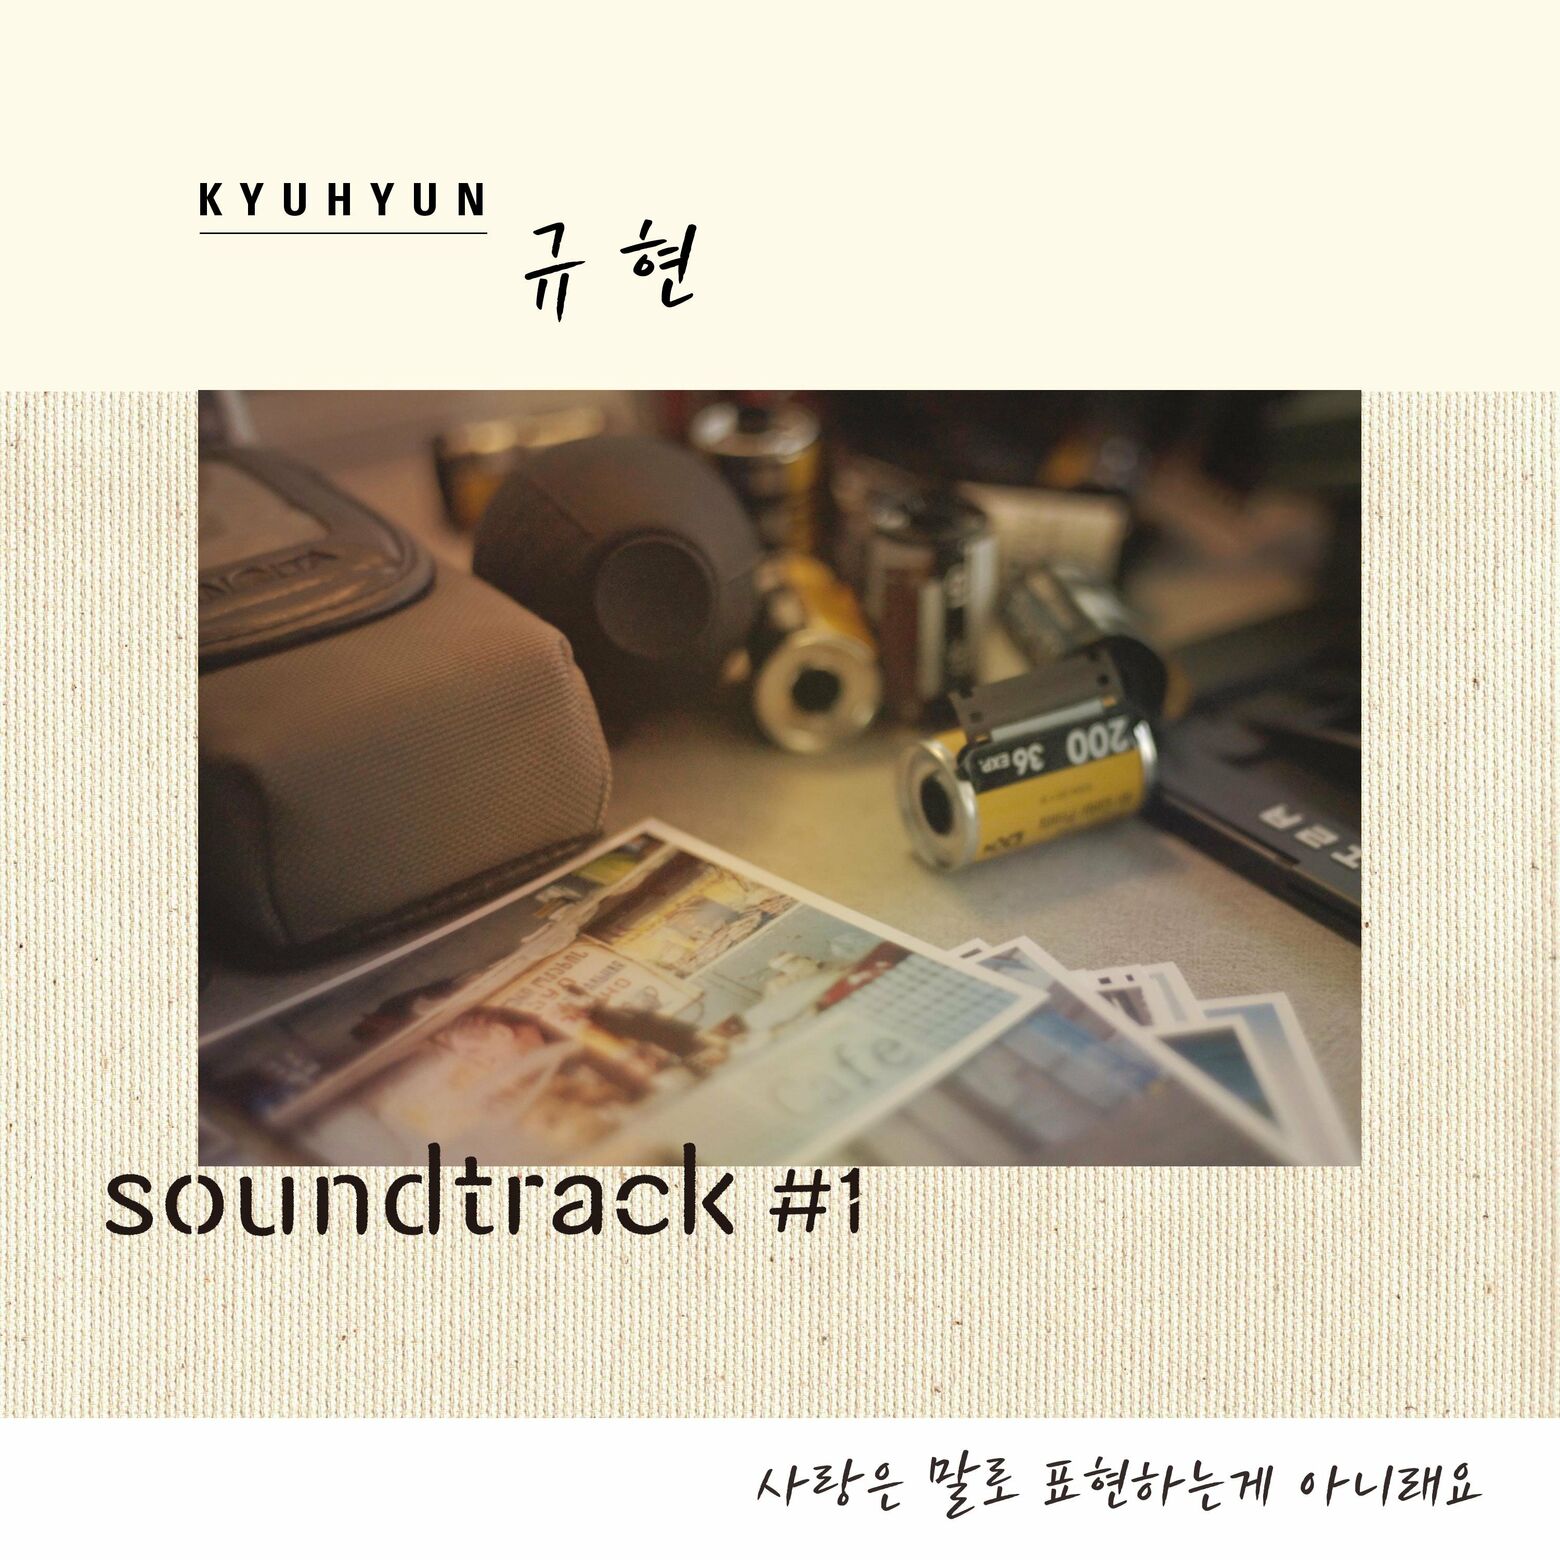 Kyuhyun – Love beyond words (From “soundtrack#1” [Original Soundtrack])